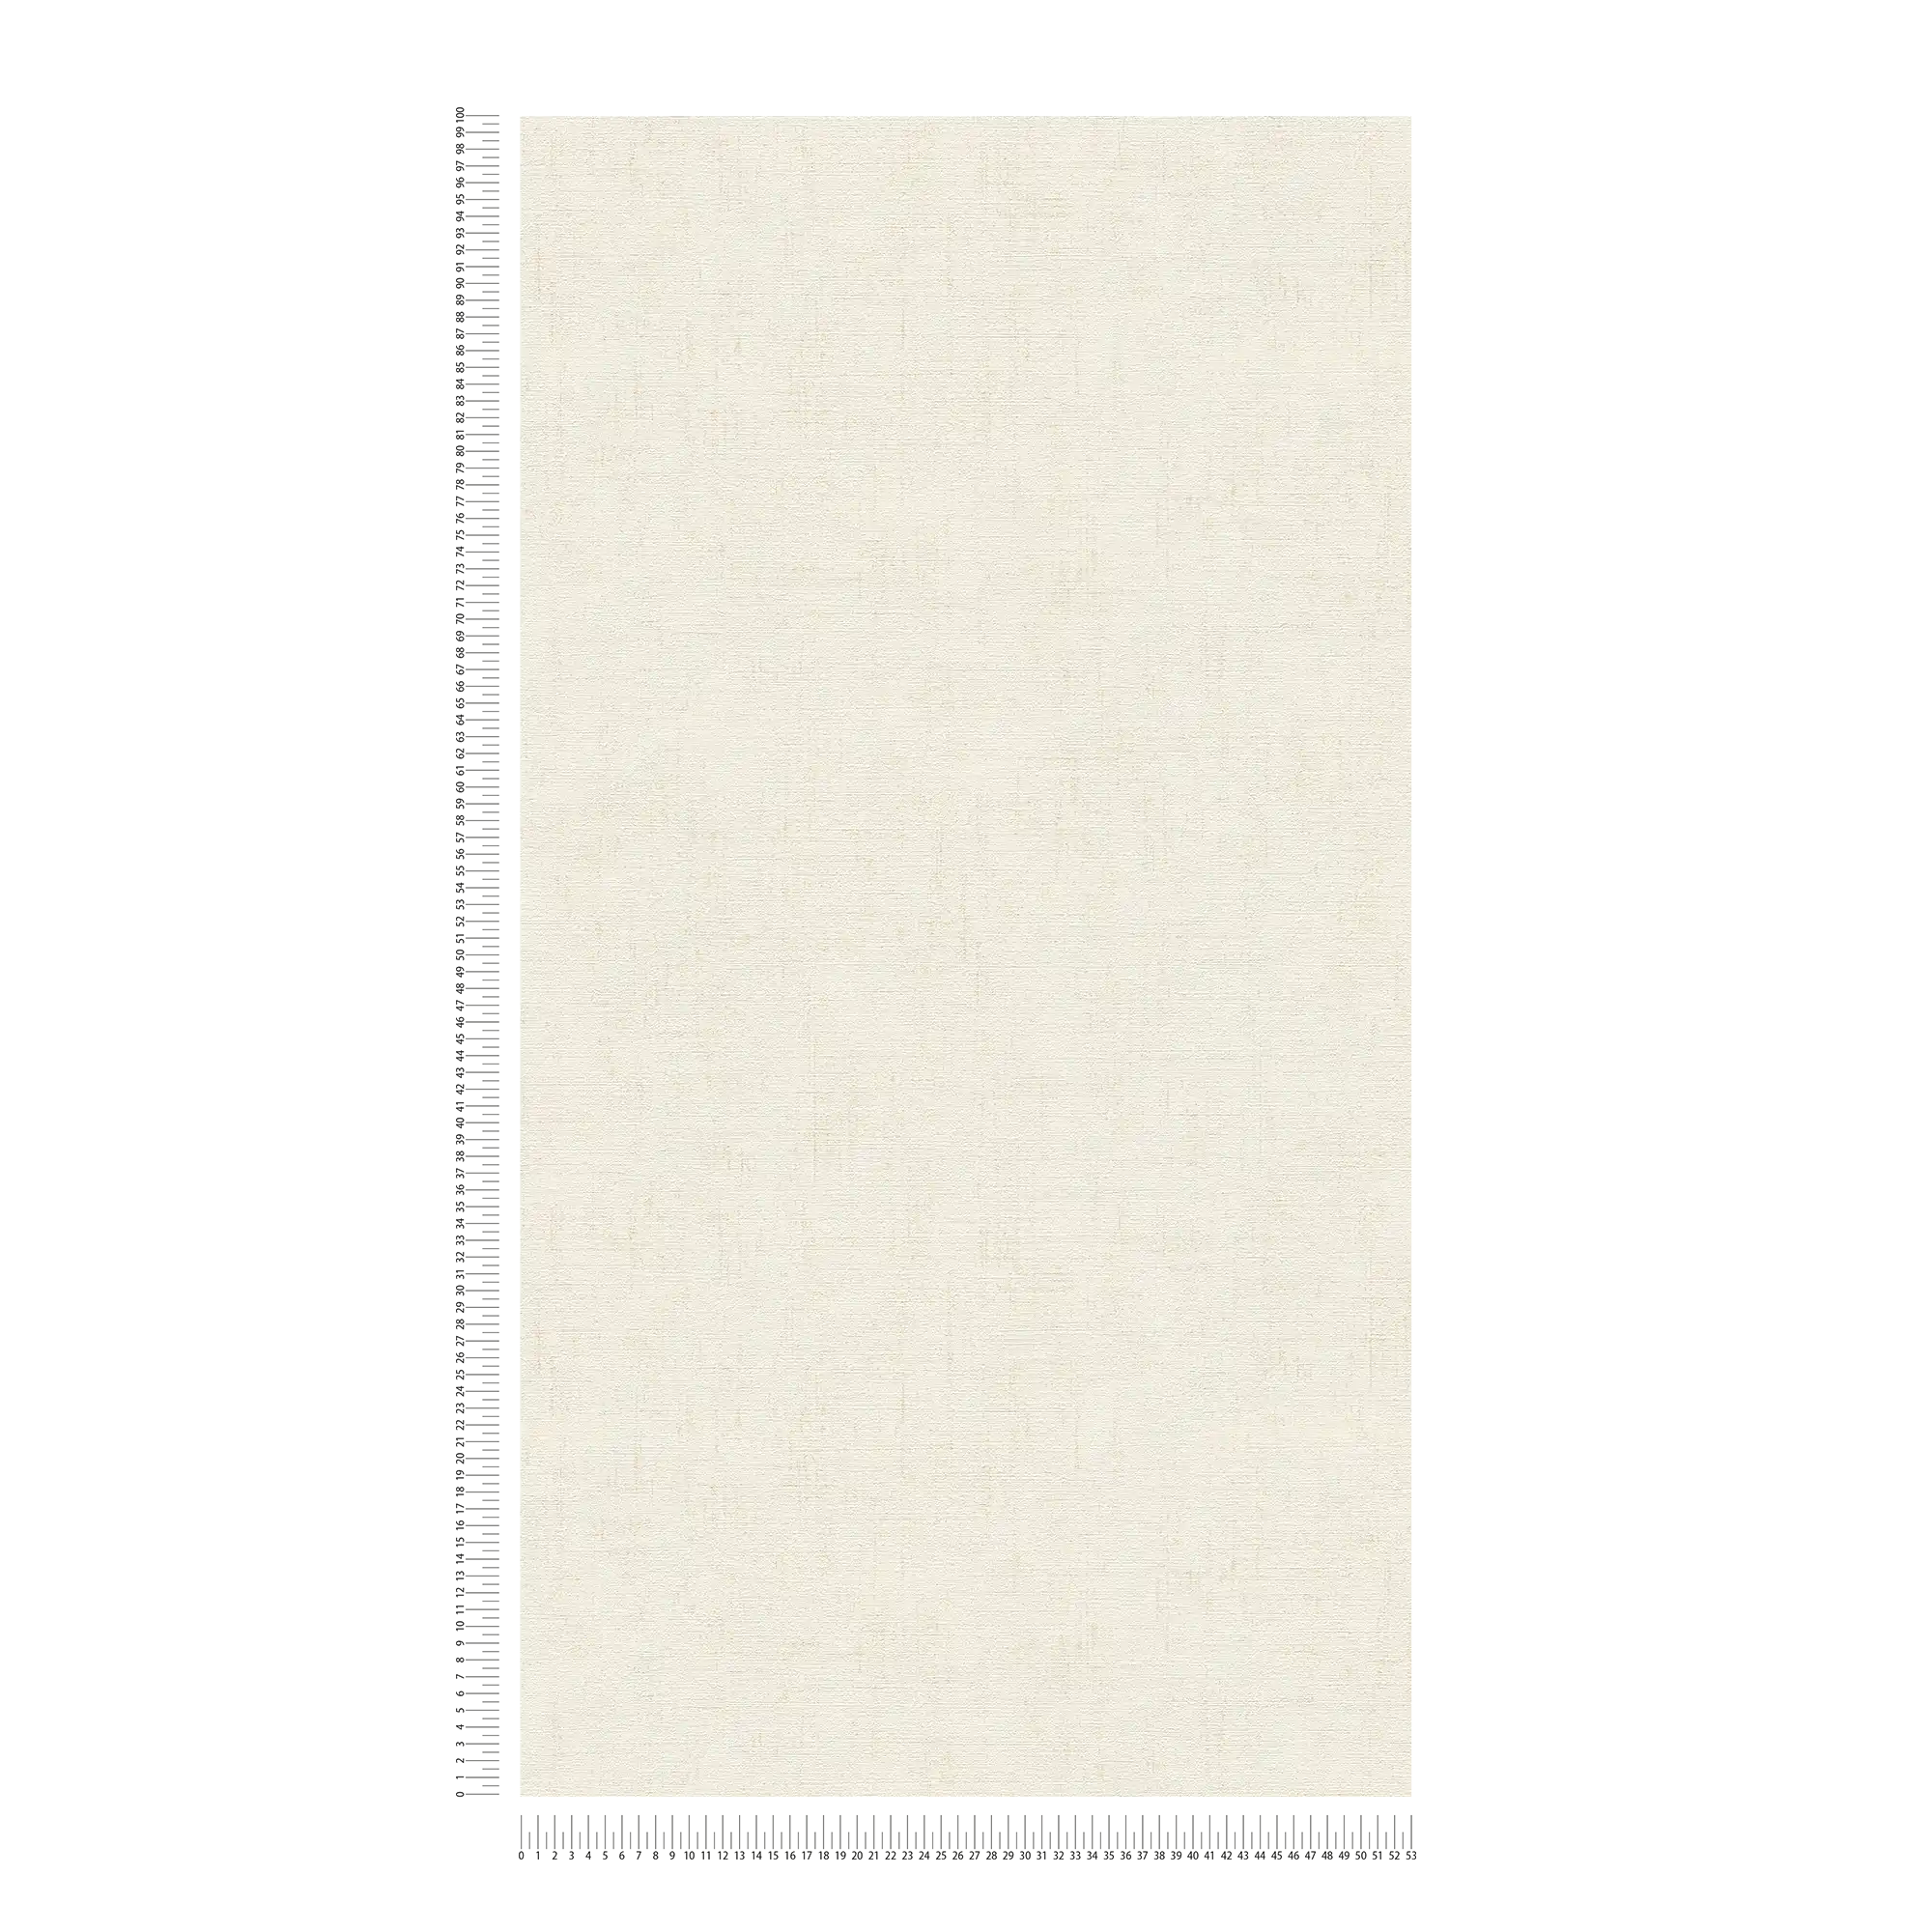             Carta da parati metallizzata bianca con superficie lucida e strutturata in madreperla
        